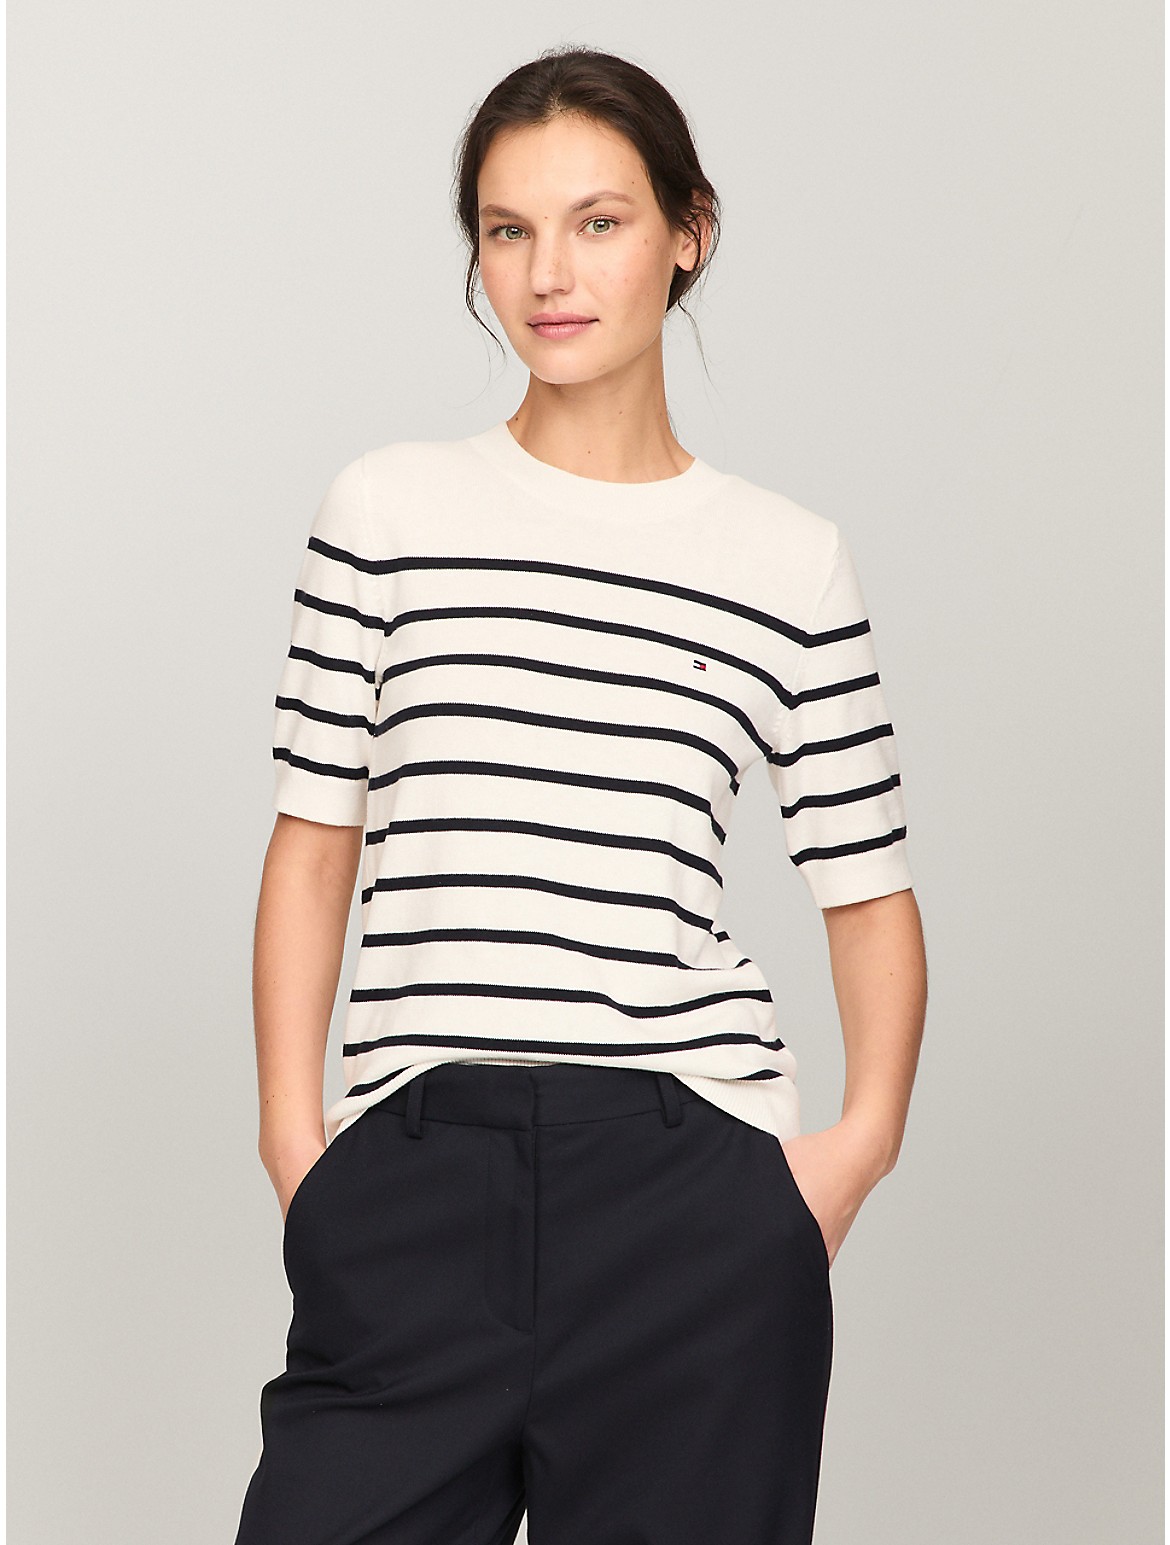 Tommy Hilfiger Women's Short-Sleeve Stripe Sweater